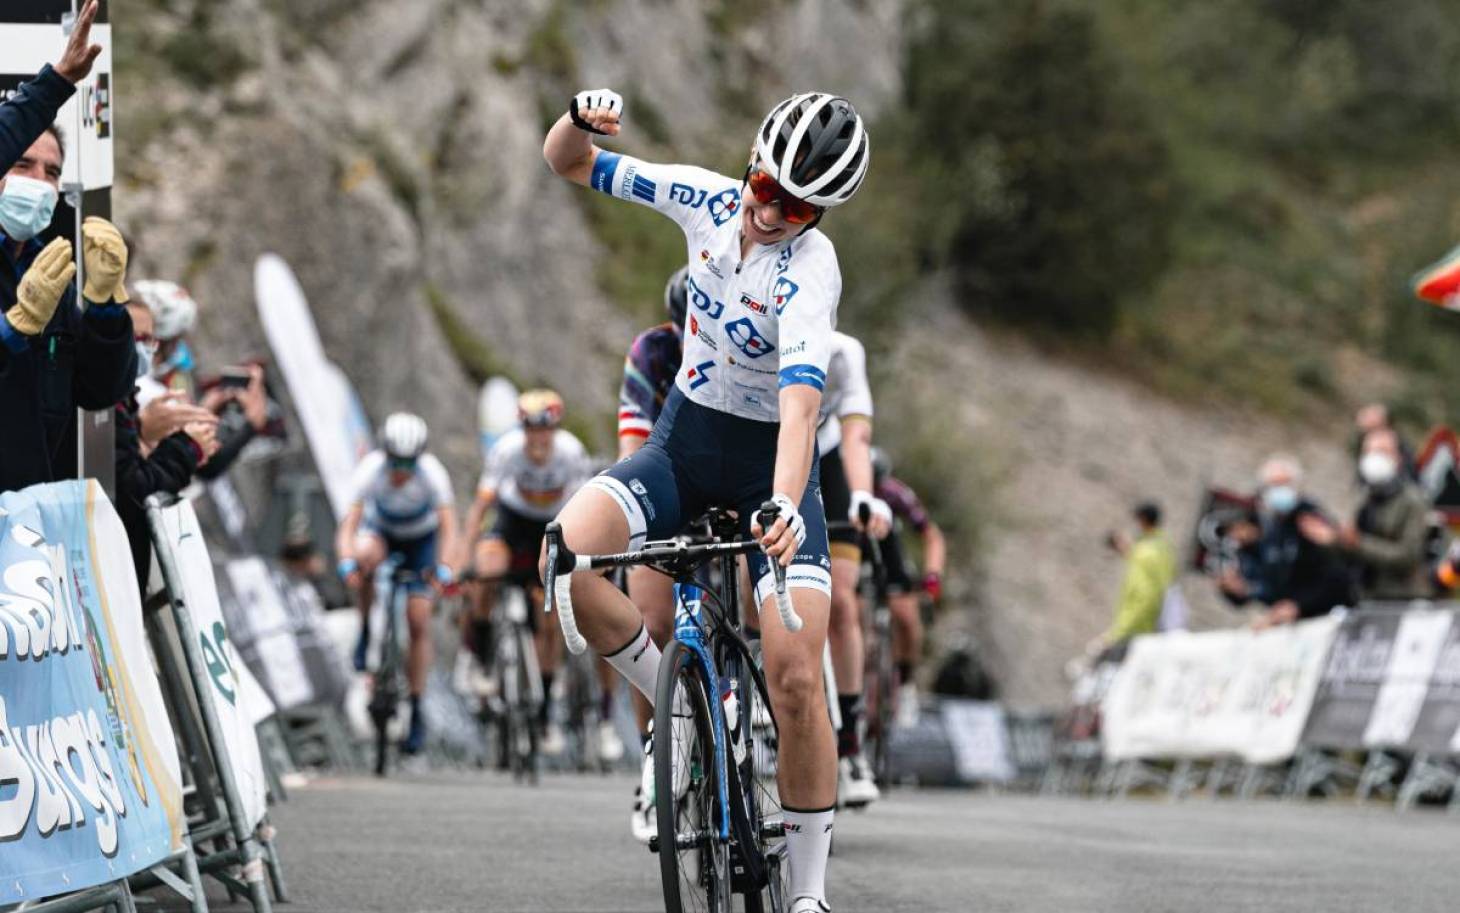 Cyclisme - Cecilie Ludwig remporte la 3e étape du Tour de Burgos